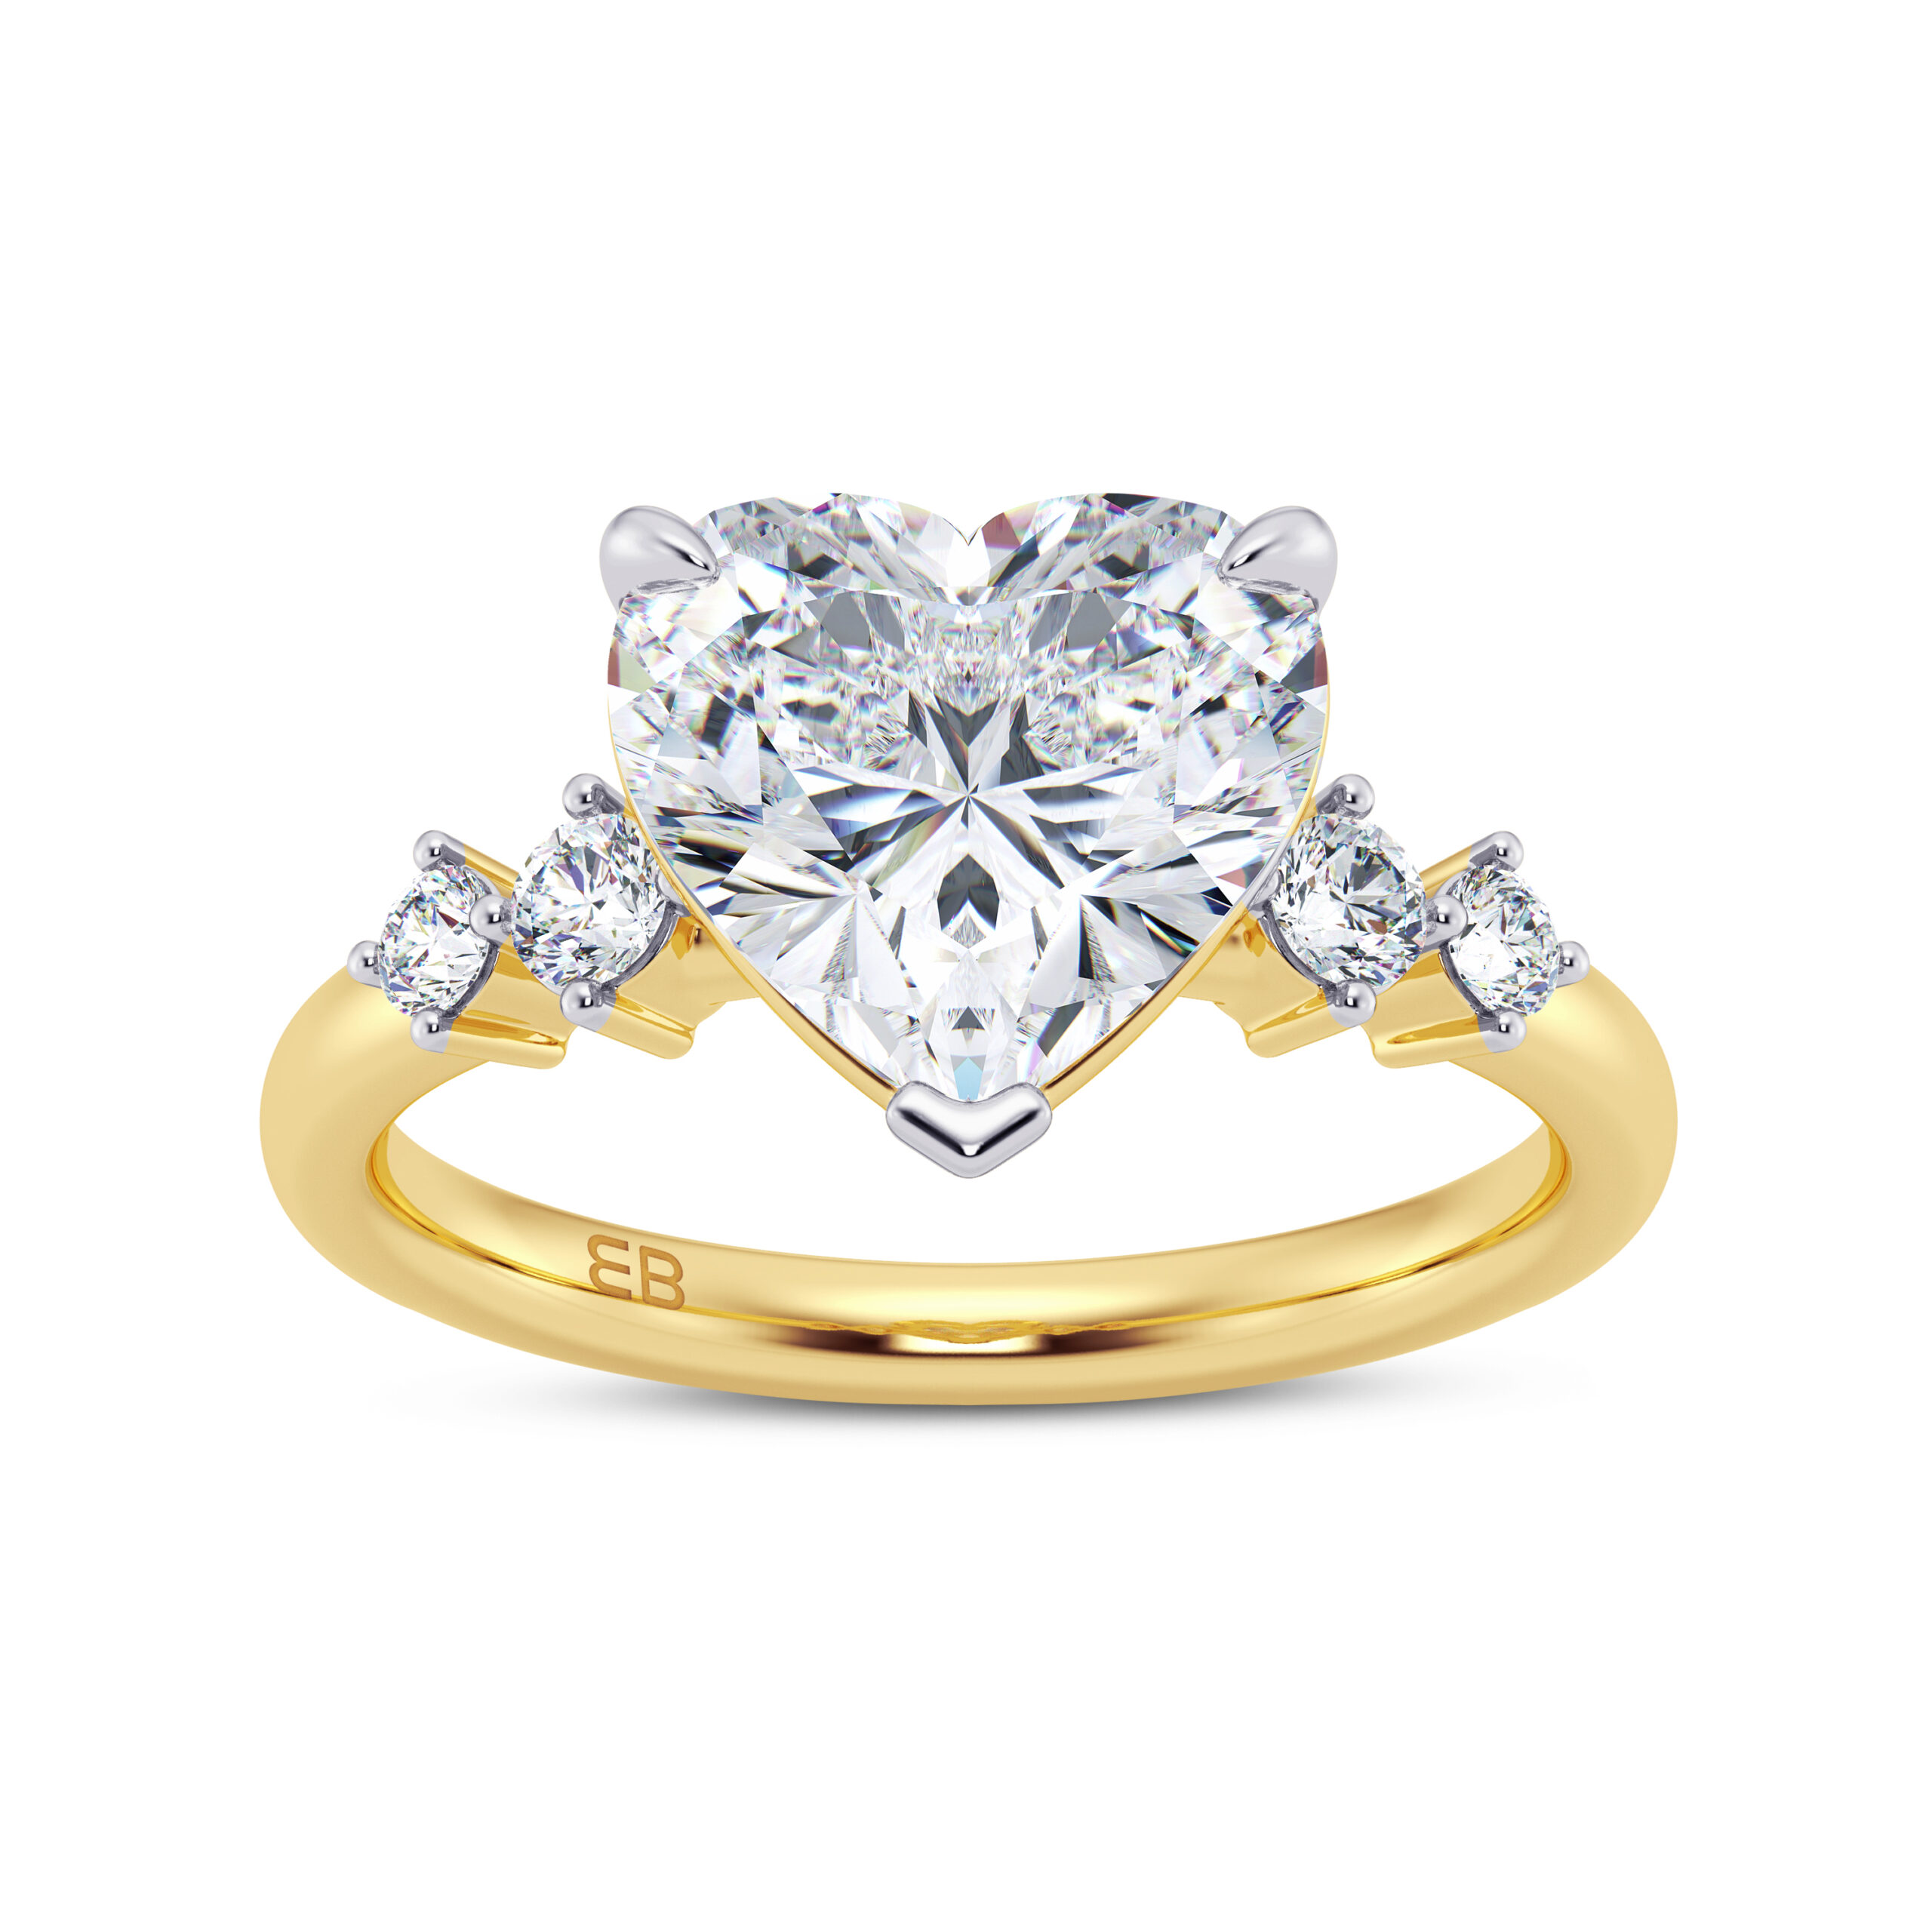 Igi certified diamond rings💍💎 ☎️7888578356 for order🌎 shipping free!! …  #goldrings #diamondring #diamondrings #diamondjewe... | Instagram